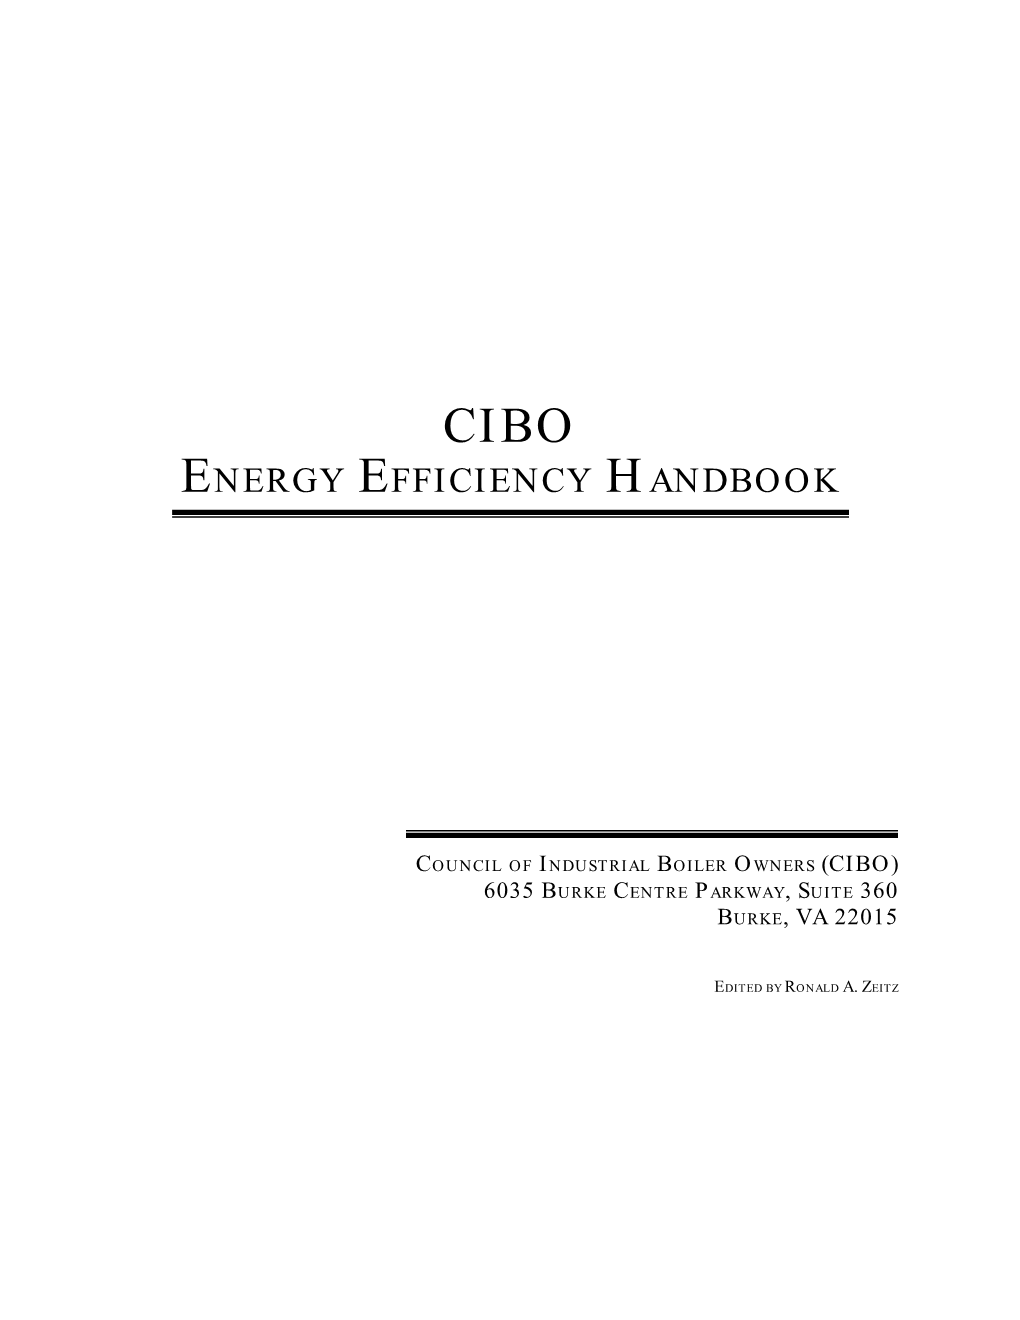 Cibo Energy Efficiency Handbook